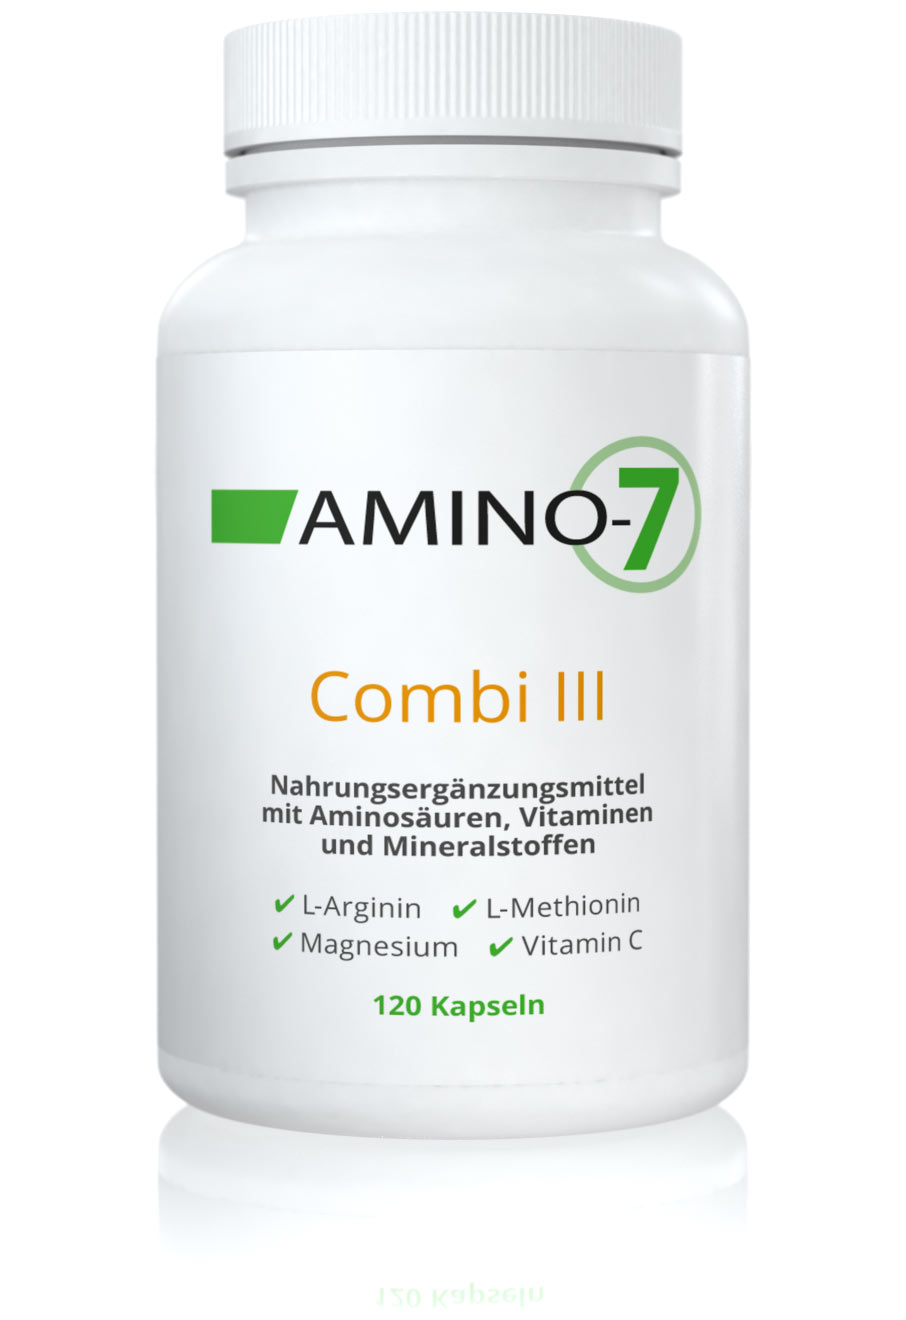 AMINO-7 Combi III